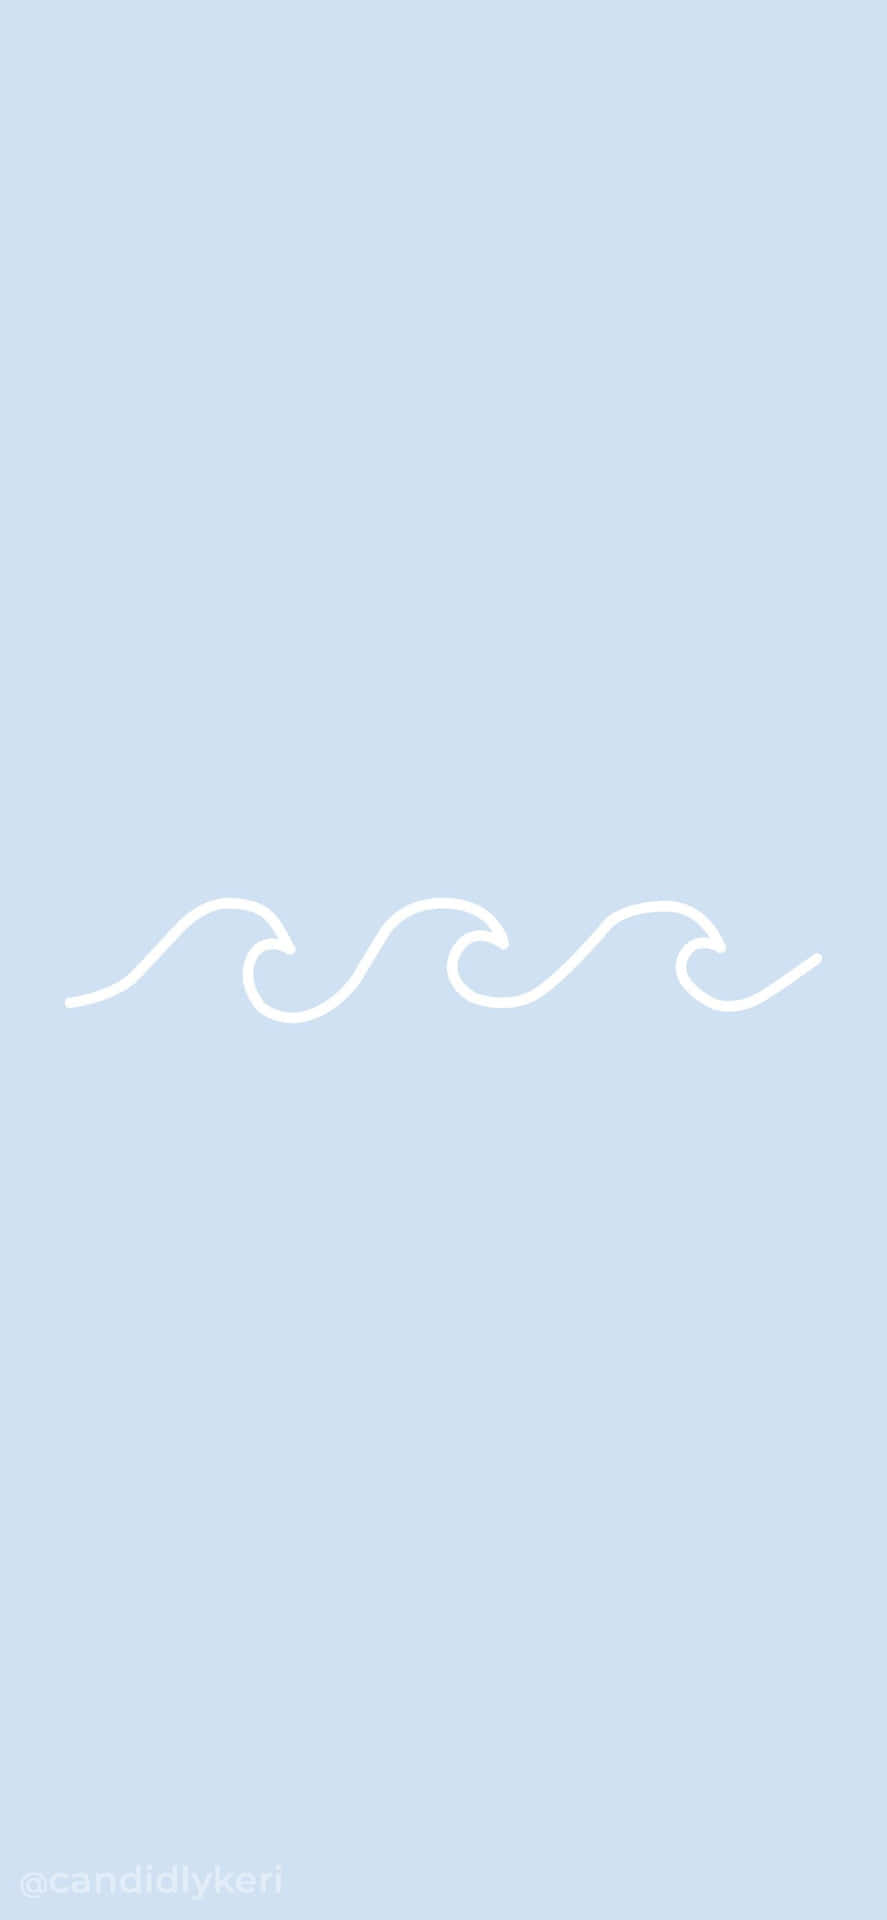 Arteminimalista De Olas De Mar En Tonos Estéticos De Azul Claro. Fondo de pantalla